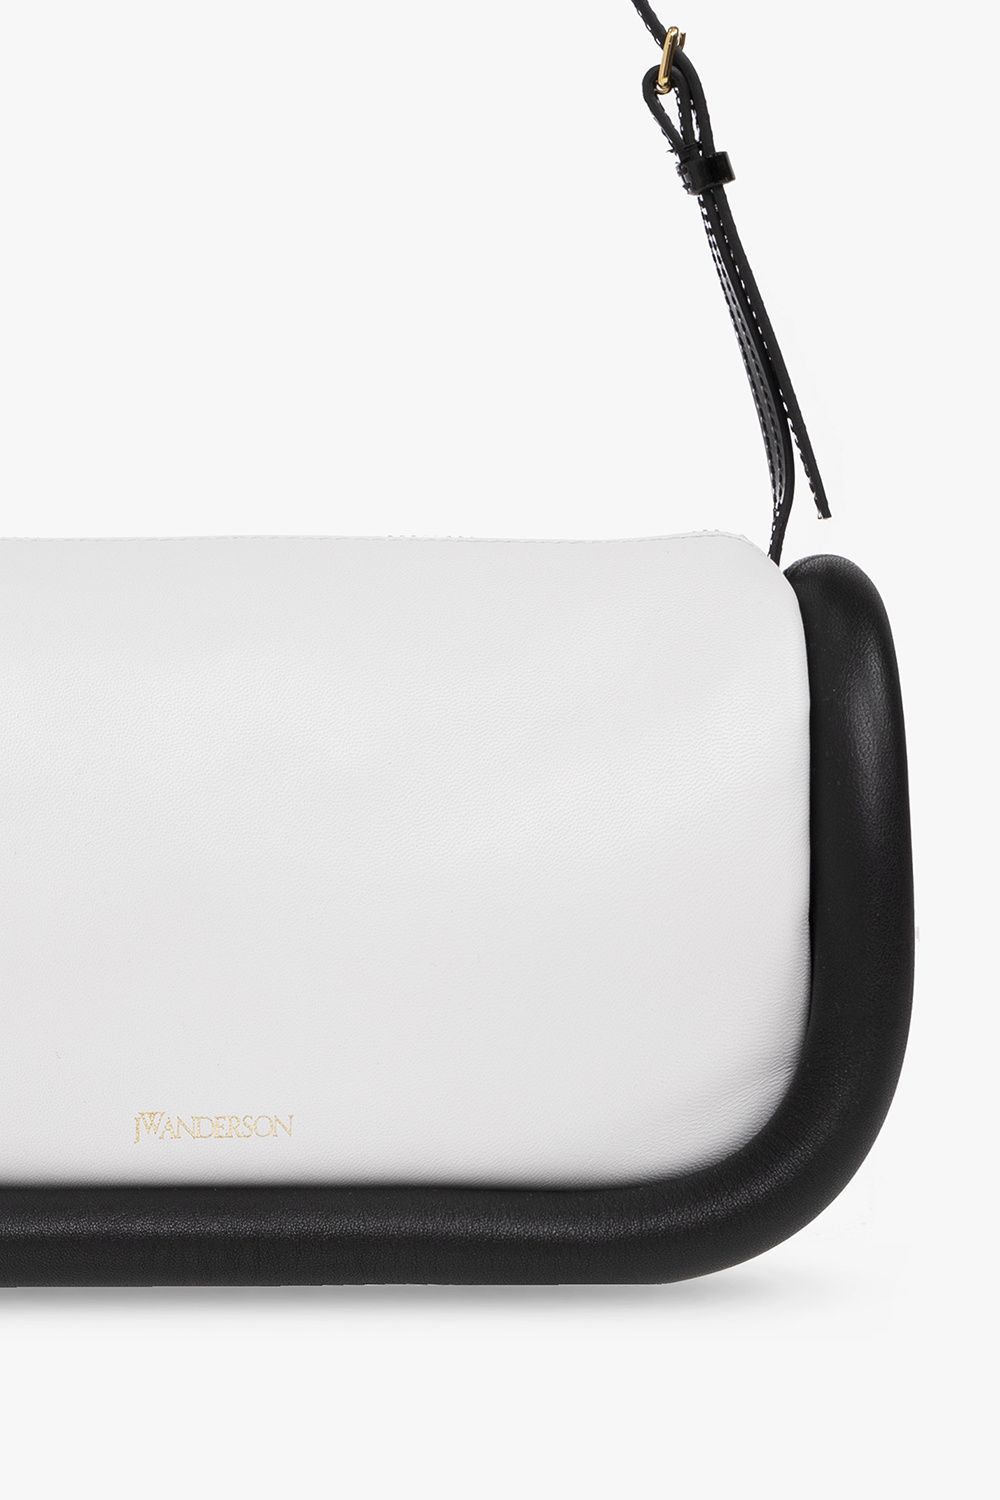 JW Anderson ‘The Bumper’ hobo shoulder bag